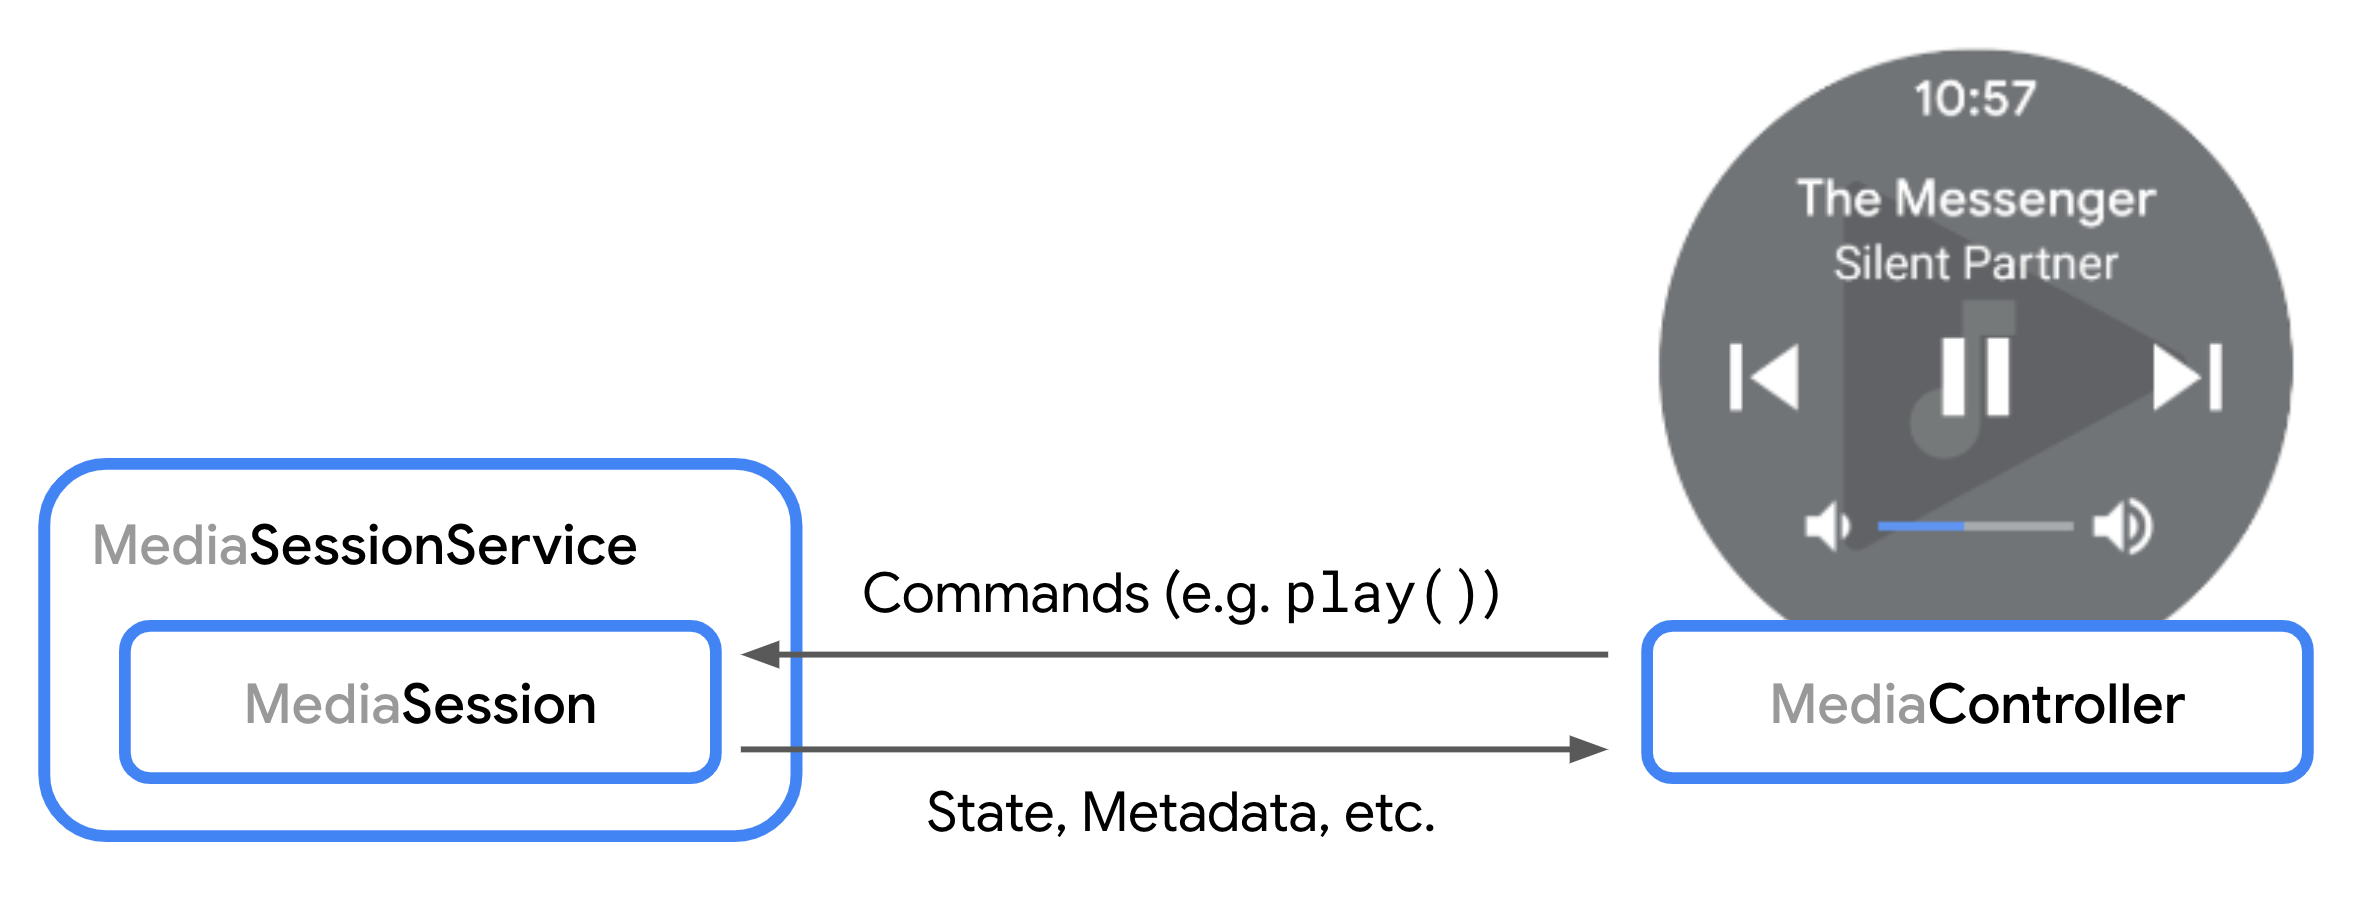 رسم تخطيطي يوضح التفاعل بين MediaSession وMediaController.